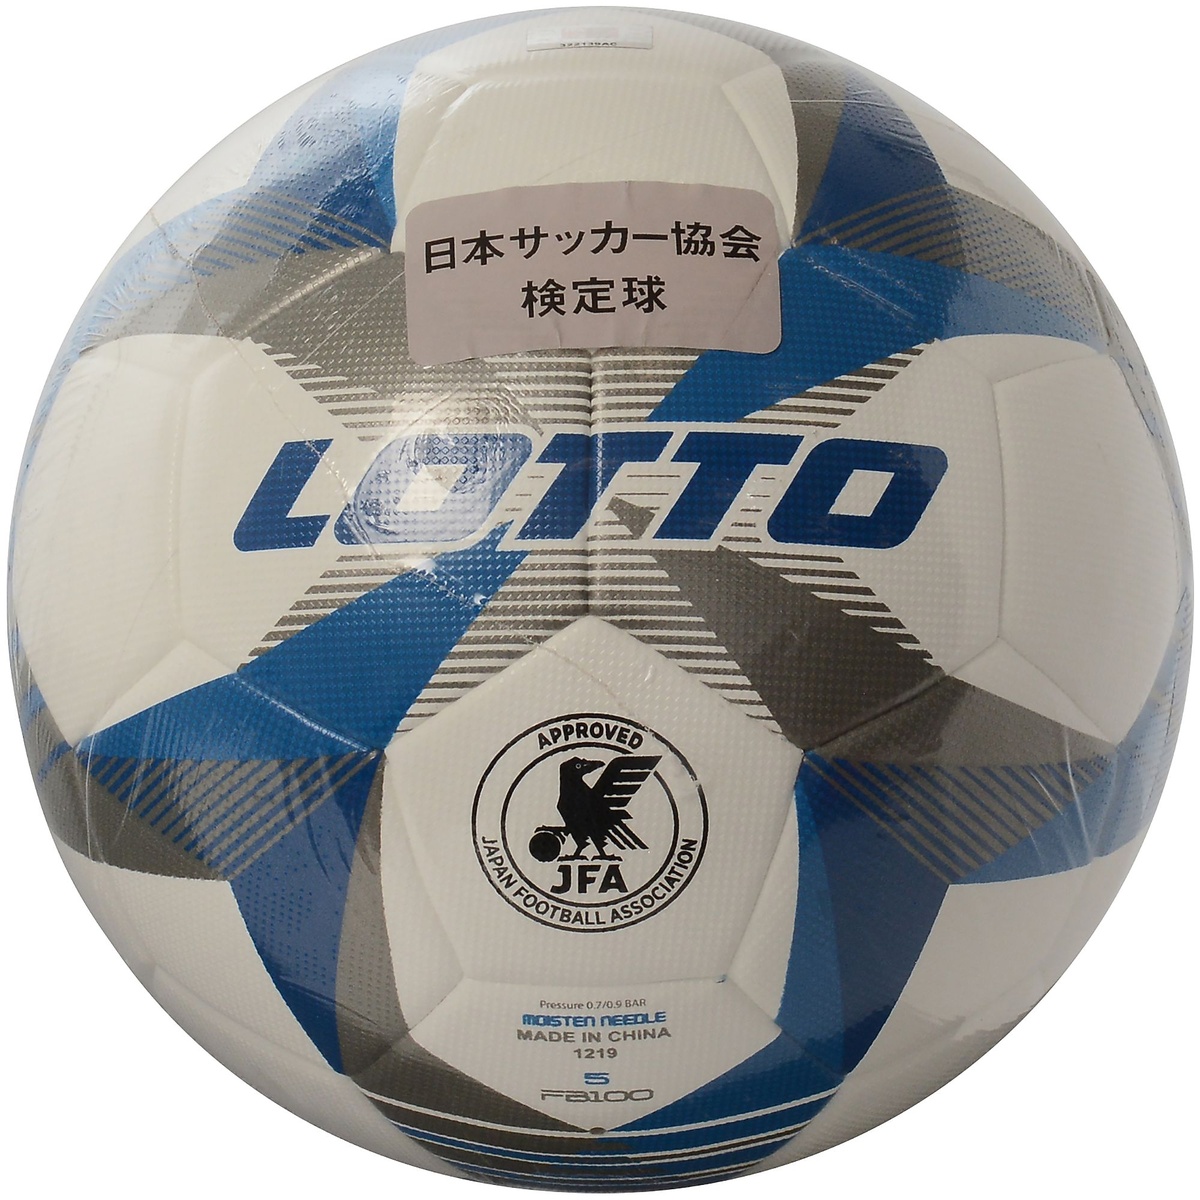 楽天市場 Lotto ロット Maestro Fb100 サッカー ボール メンズ 5 All White Skydiver Blue Diva Blue Lo Y 002 001 スポーツオーソリティ 楽天市場店